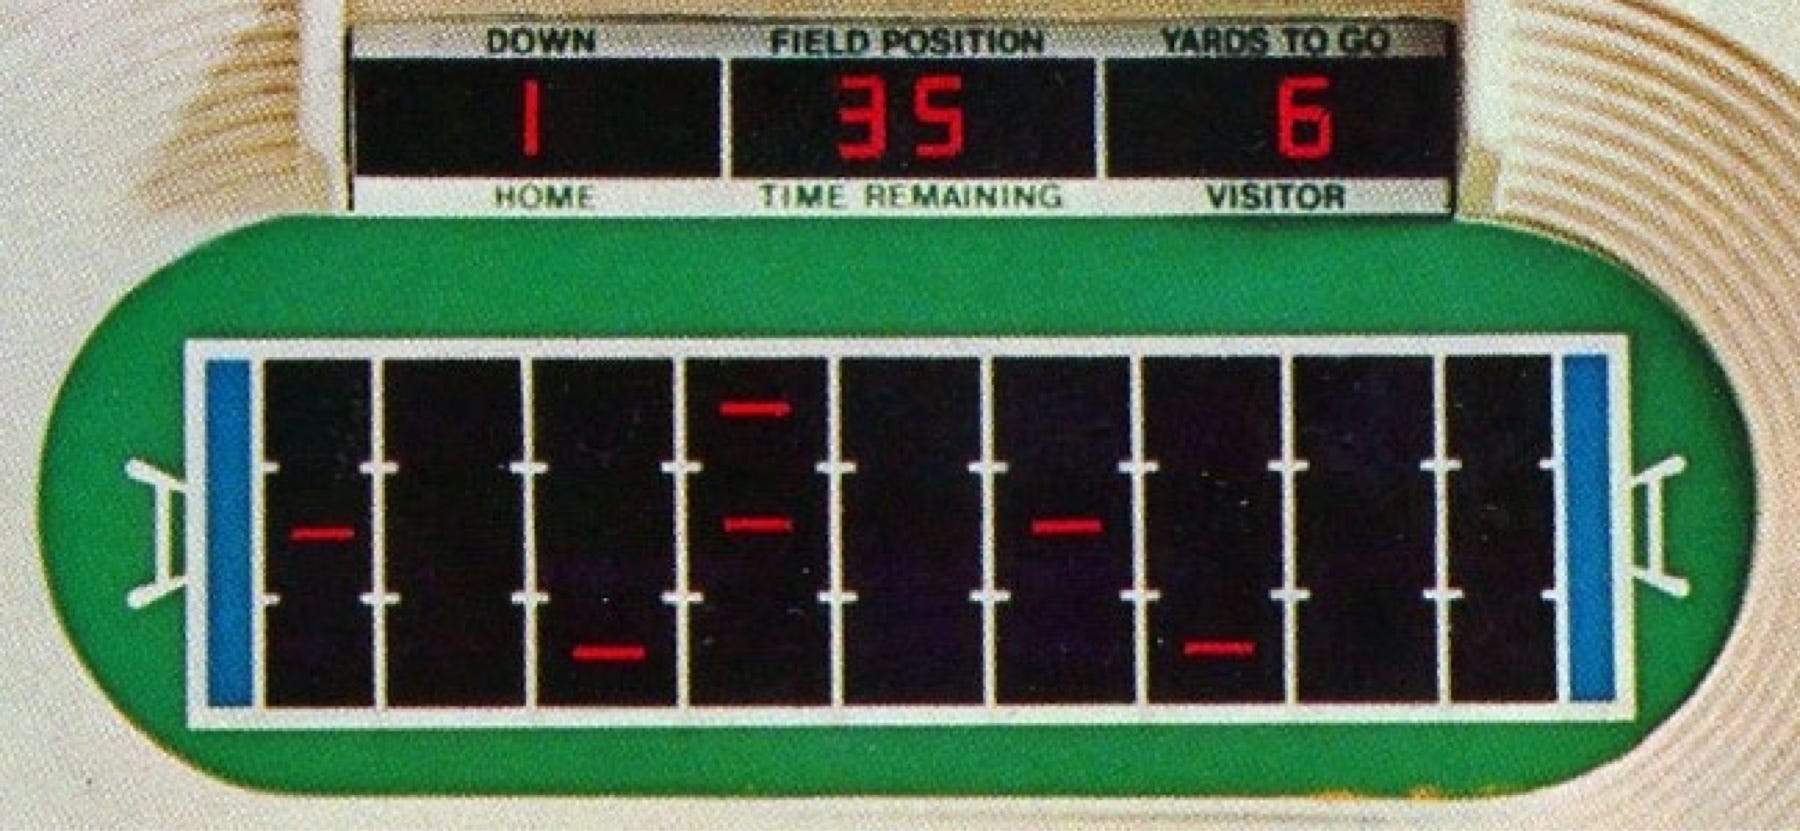 1977 mattel electronic football game